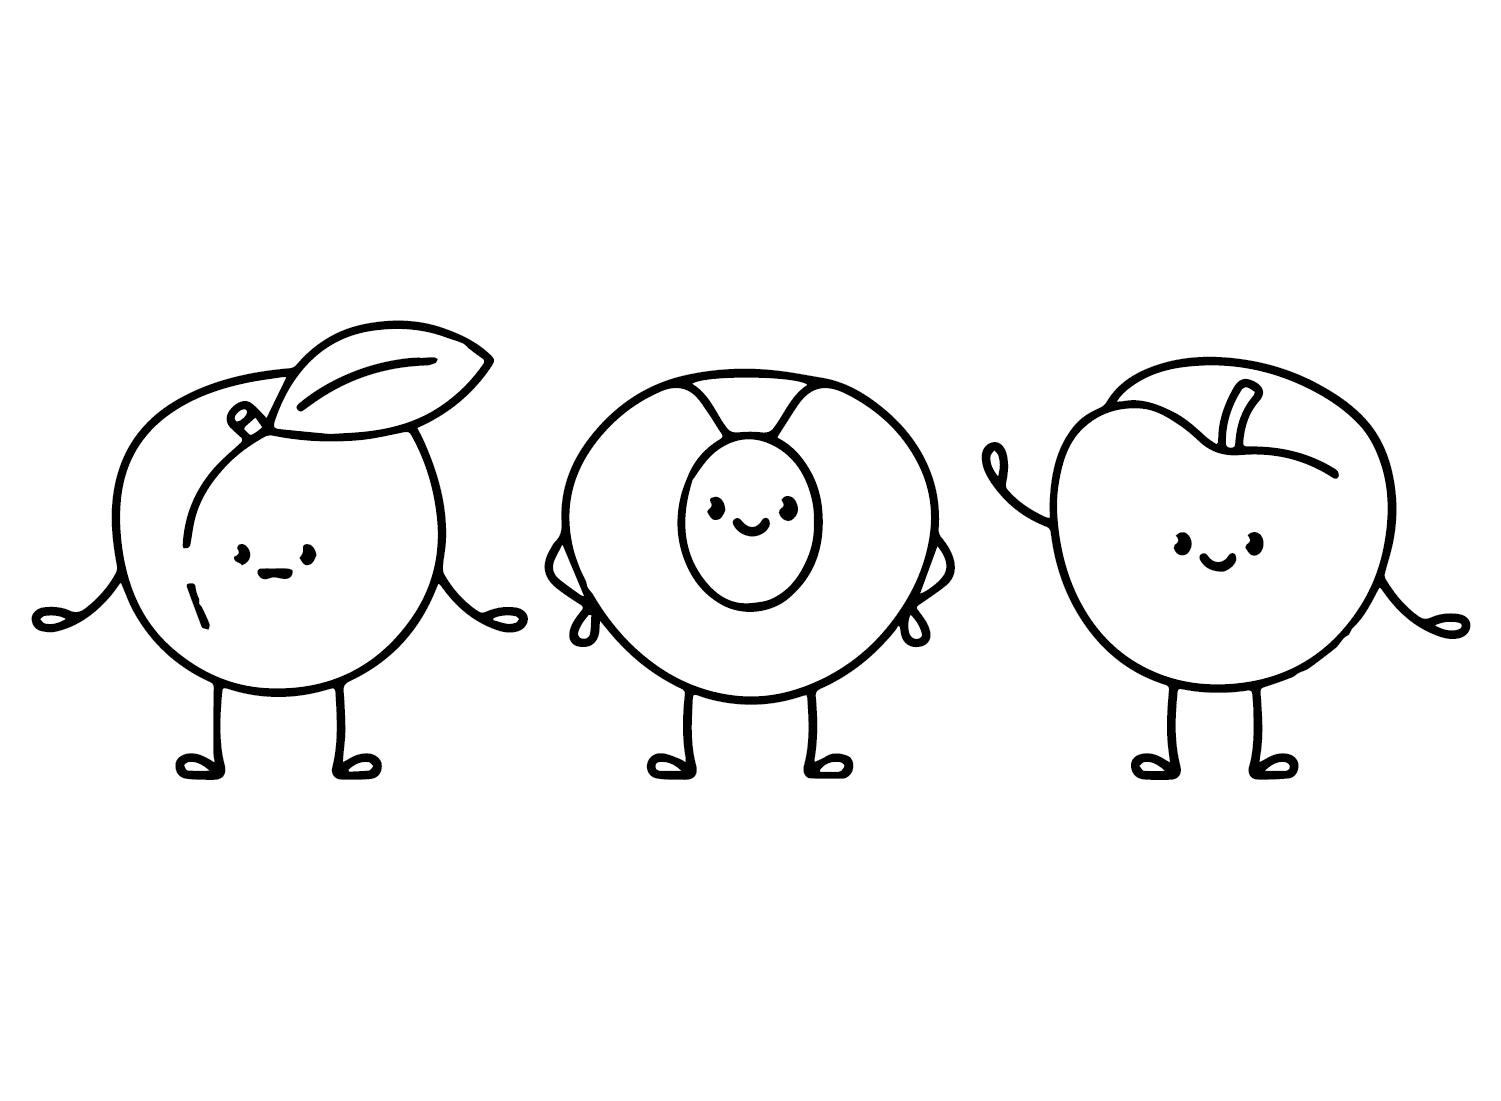 Pêssegos de personagem de desenho animado from Pêssegos